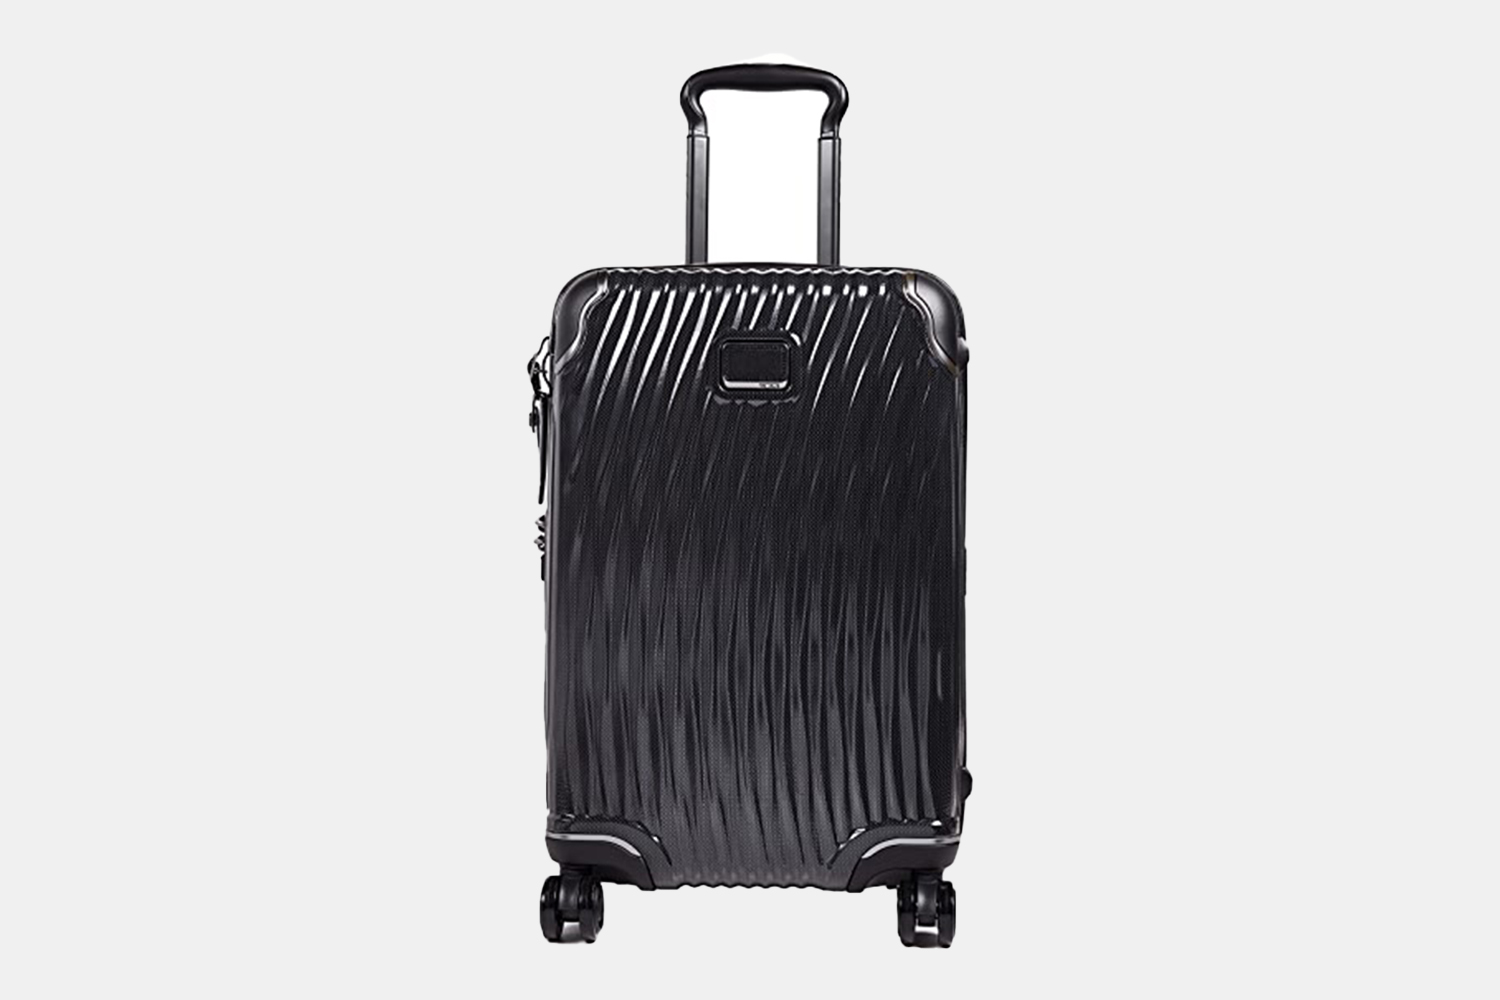 a matte black suitcase.